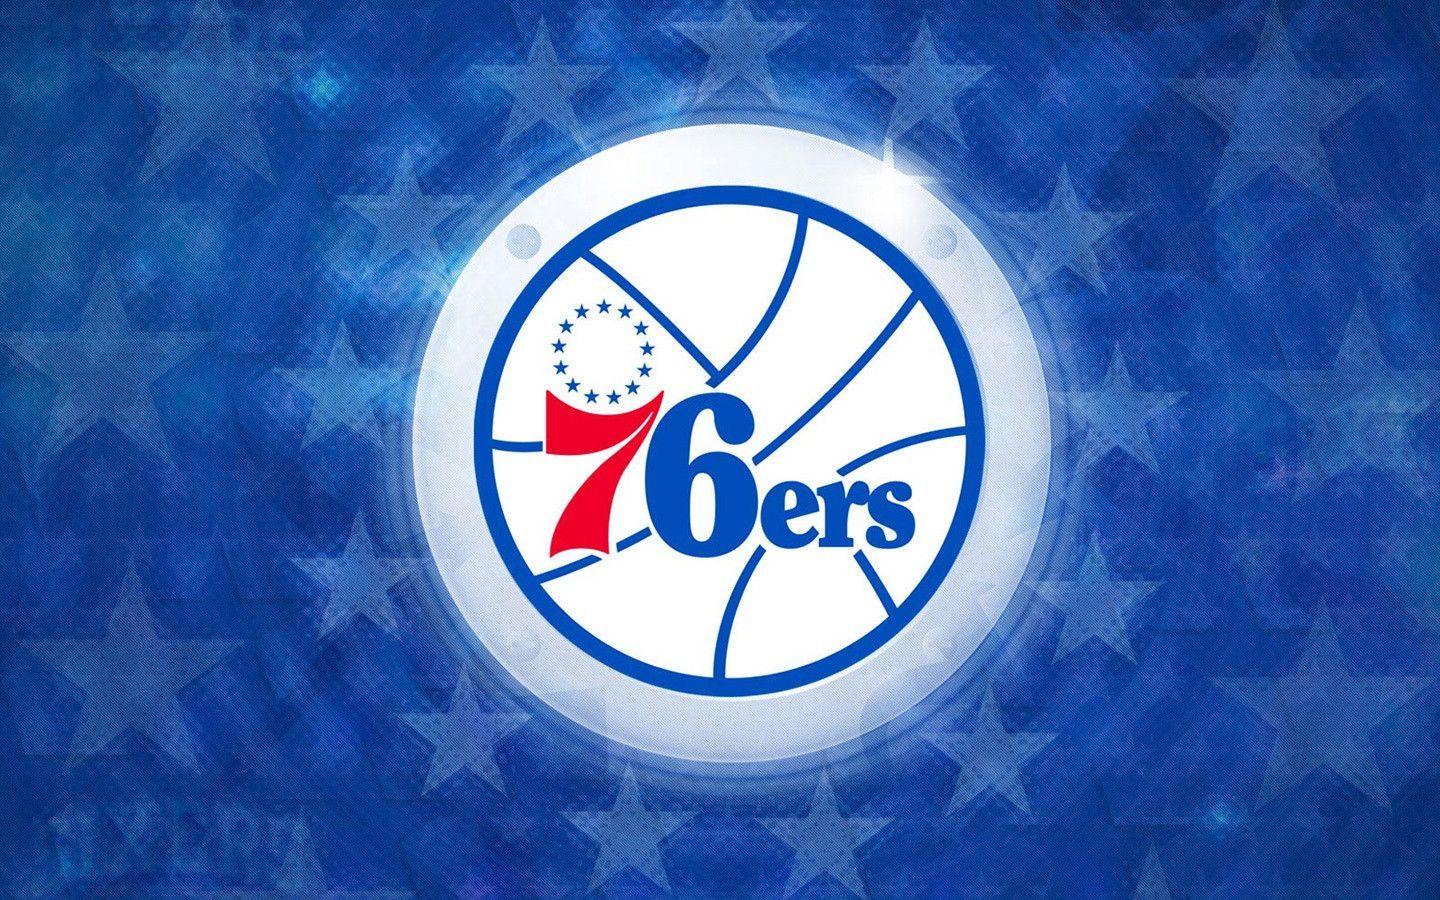 Philadelphia 76ers wallpaper. Philadelphia 76ers background